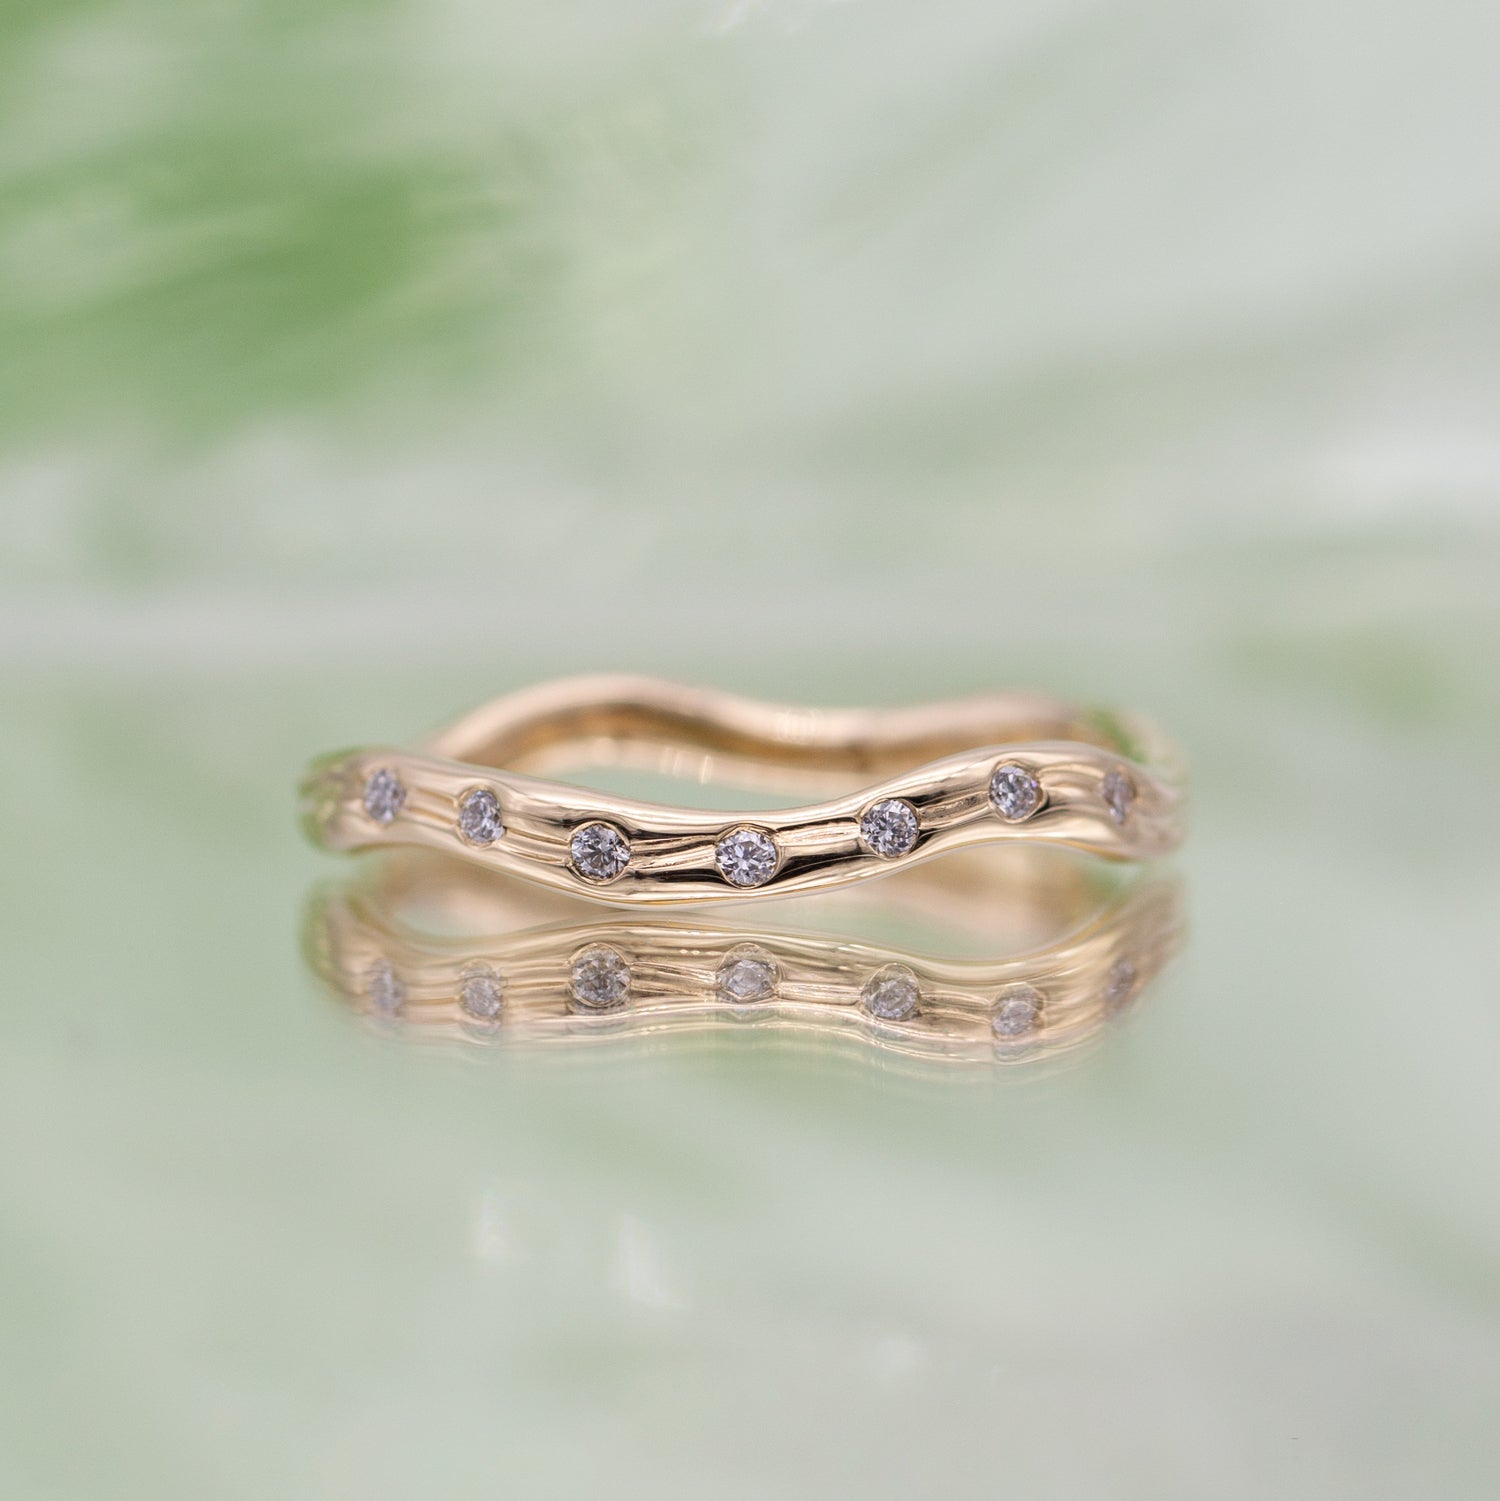 En ring i guld set forfra med syv diamanter på spejlende lysegrøn baggrund. Ringen er formgivet organisk og bølger elegant.